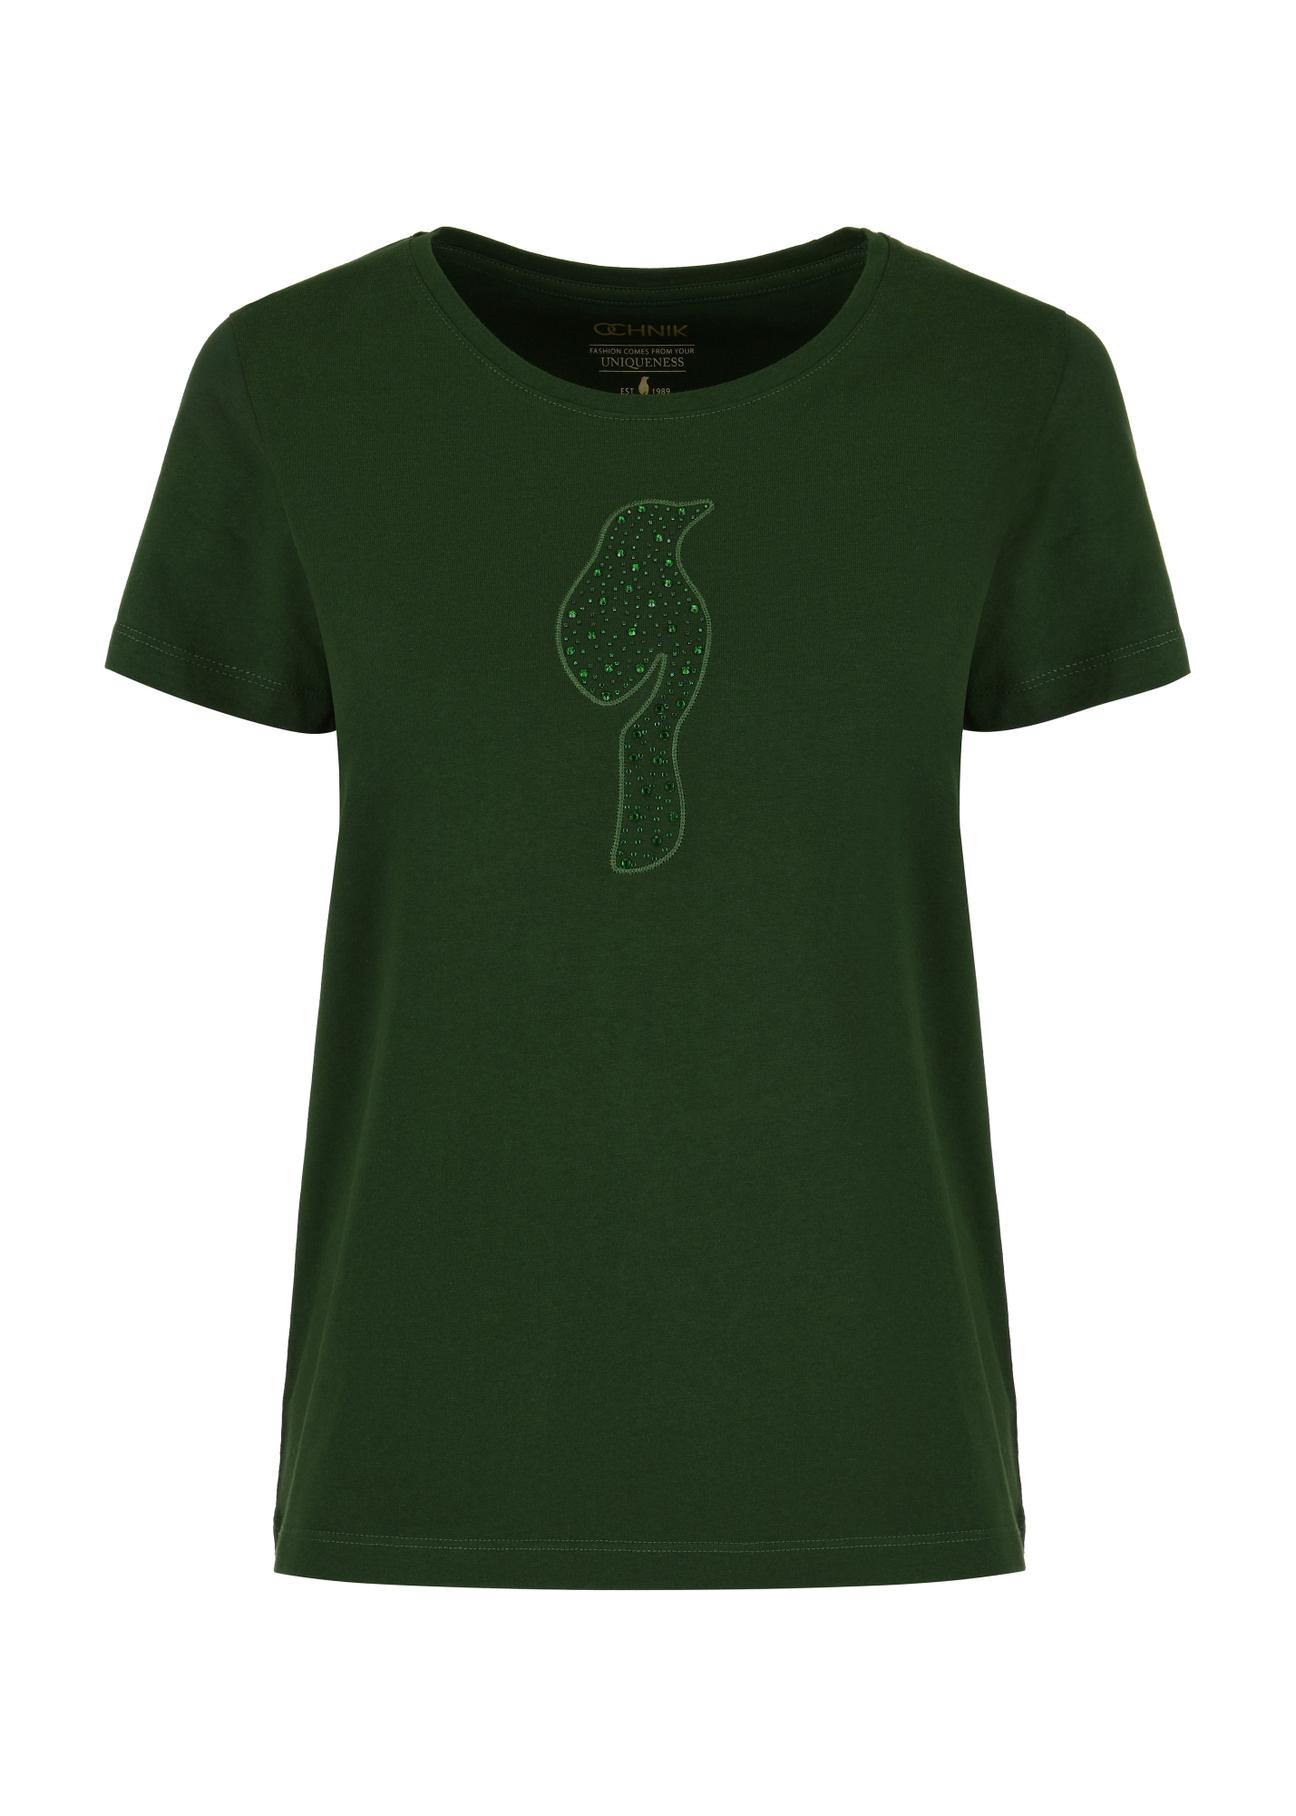 T-shirt damski zielony z ozdobną wilgą TSHDT-0123-55(W24)